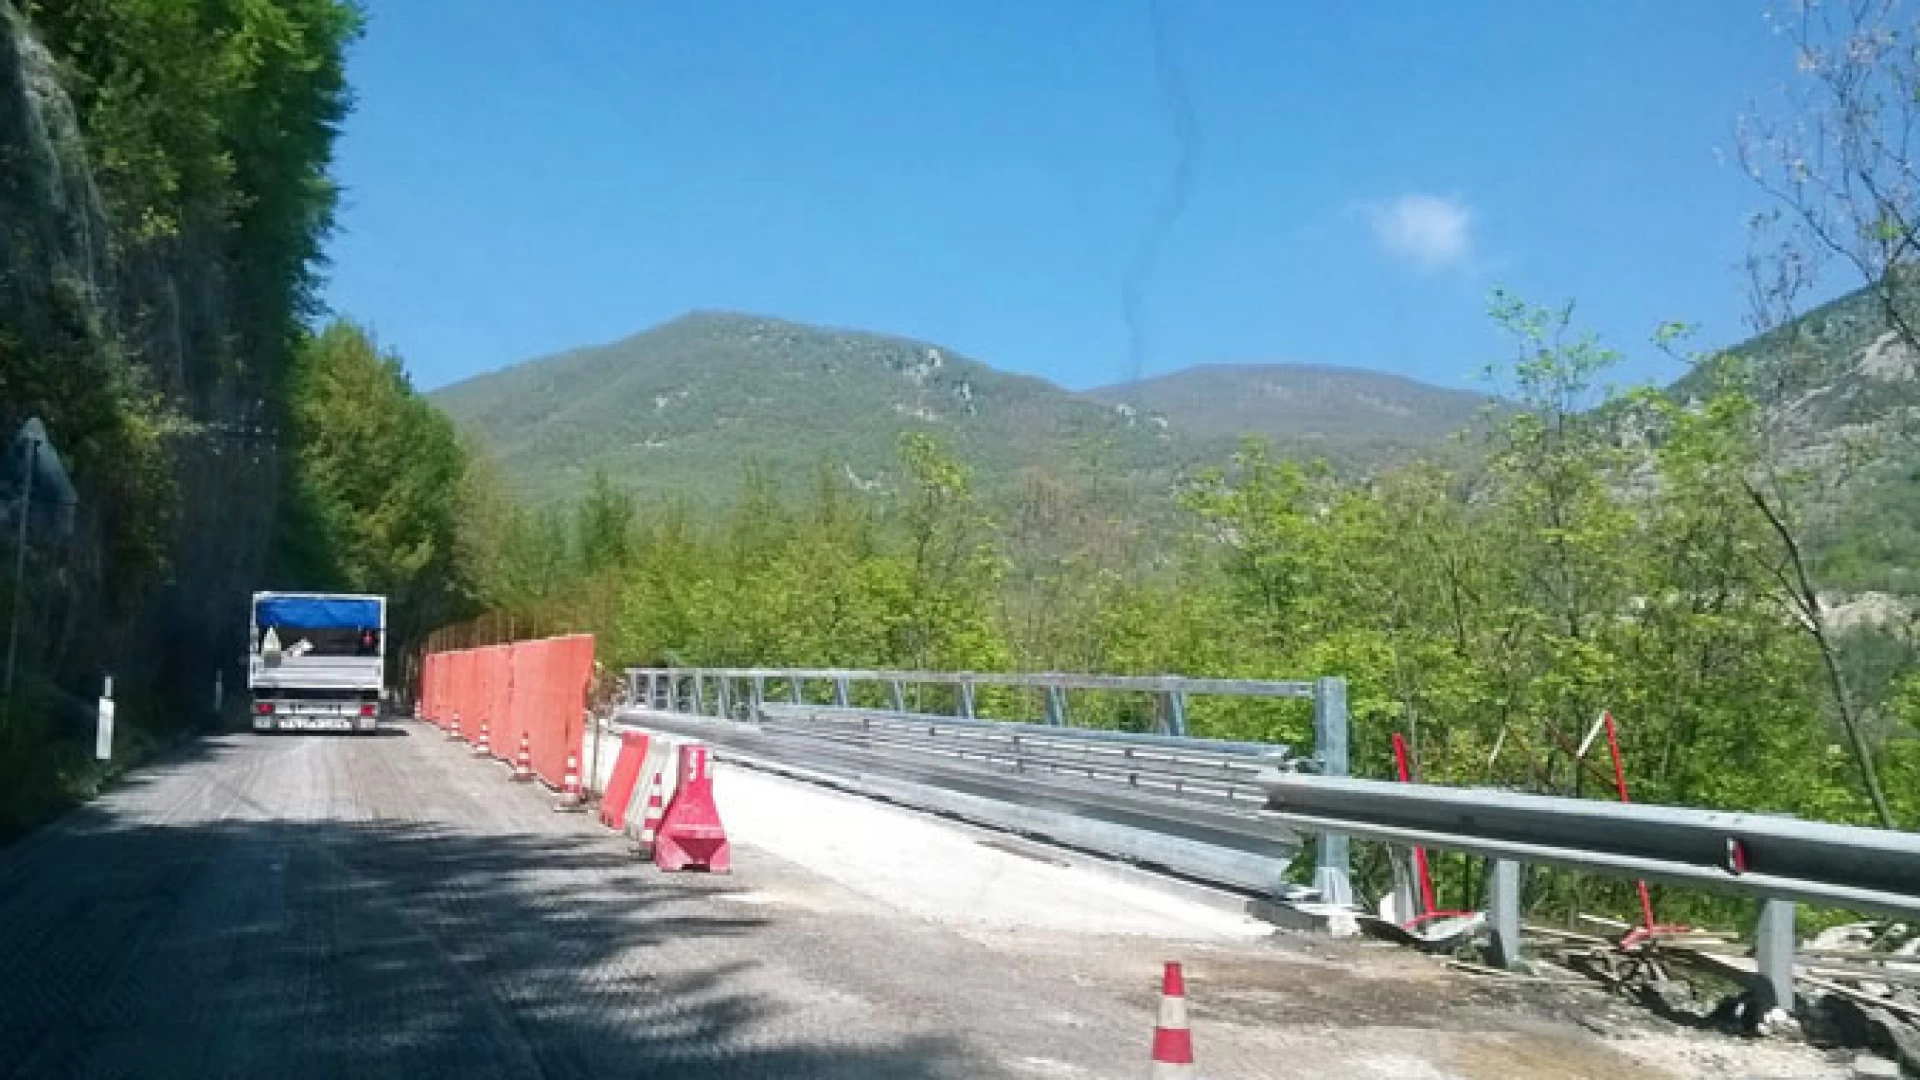 Cerro al Volturno: lavori sulla S.s. 158. Traffico rallentato sull’arteria stradale. Si stanno realizzando opere di miglioramento sulla statale.